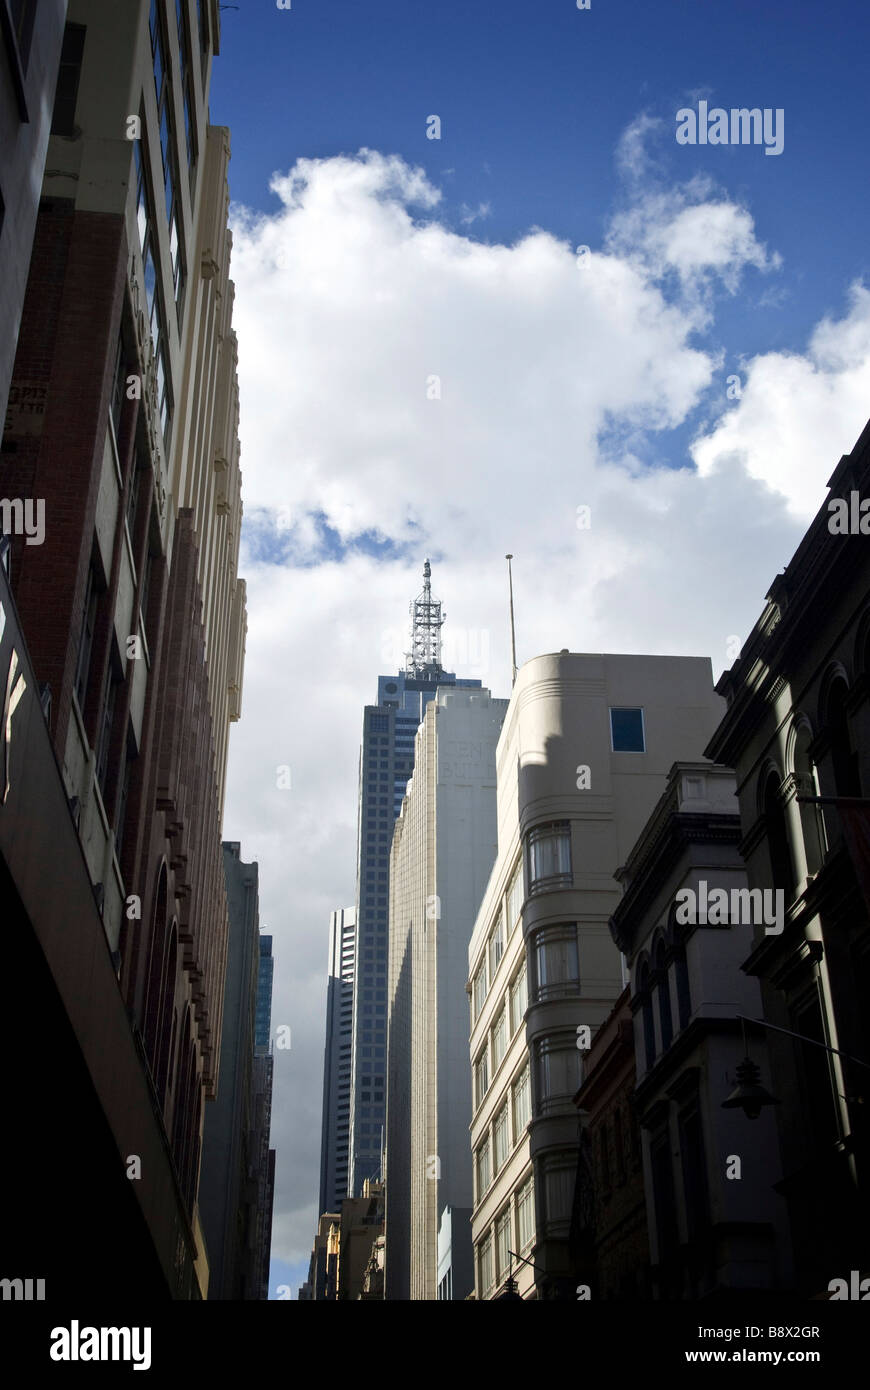 Low angle view of skyscrapers dans une ville, Bourke Street, Melbourne, Victoria, Australie Banque D'Images